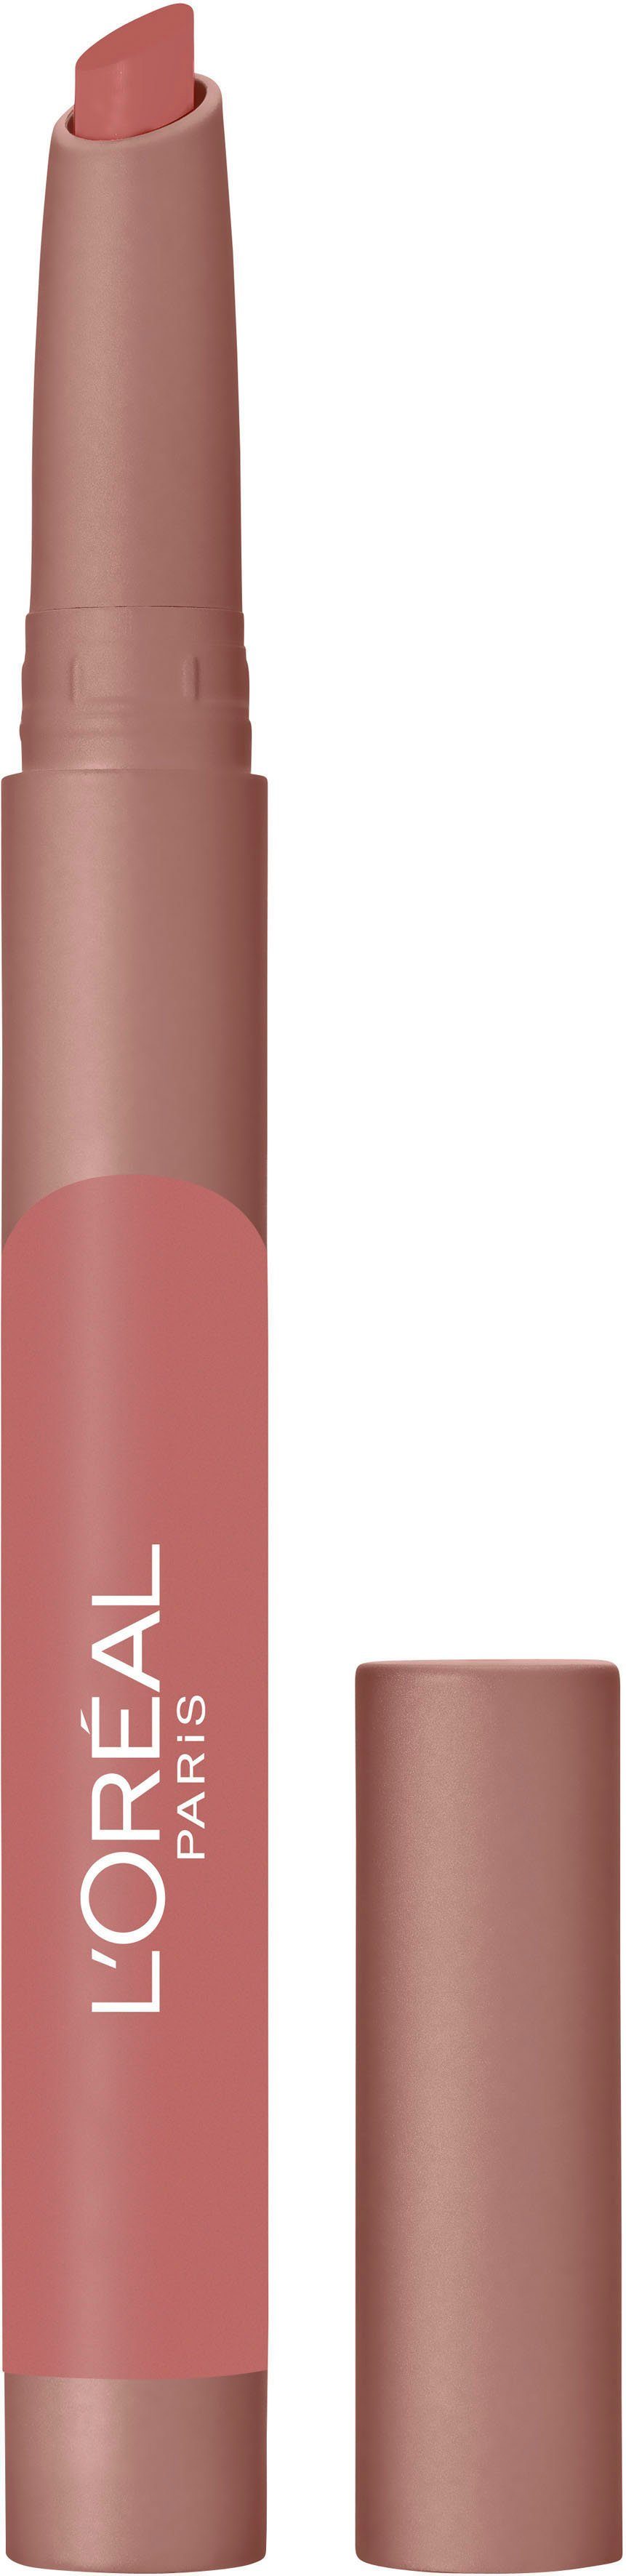 L'ORÉAL Matte PROFESSIONNEL PARIS Lippenstift L'ORÉAL 102 Caramel Lip Crayon PARIS Infaillible Blondie